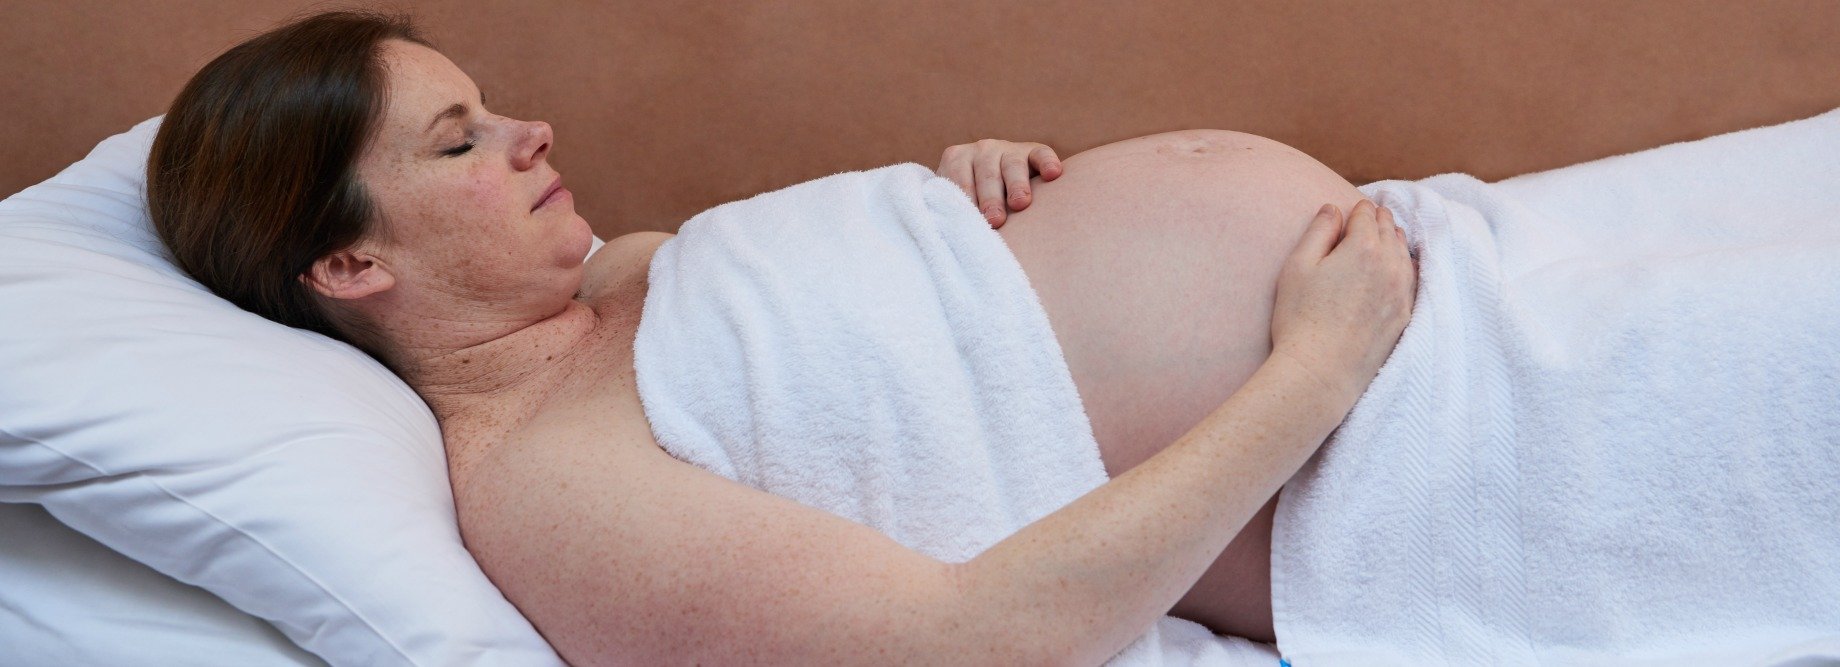 Prenatal Postnatal Treatments Pregnancy Massages Triyoga